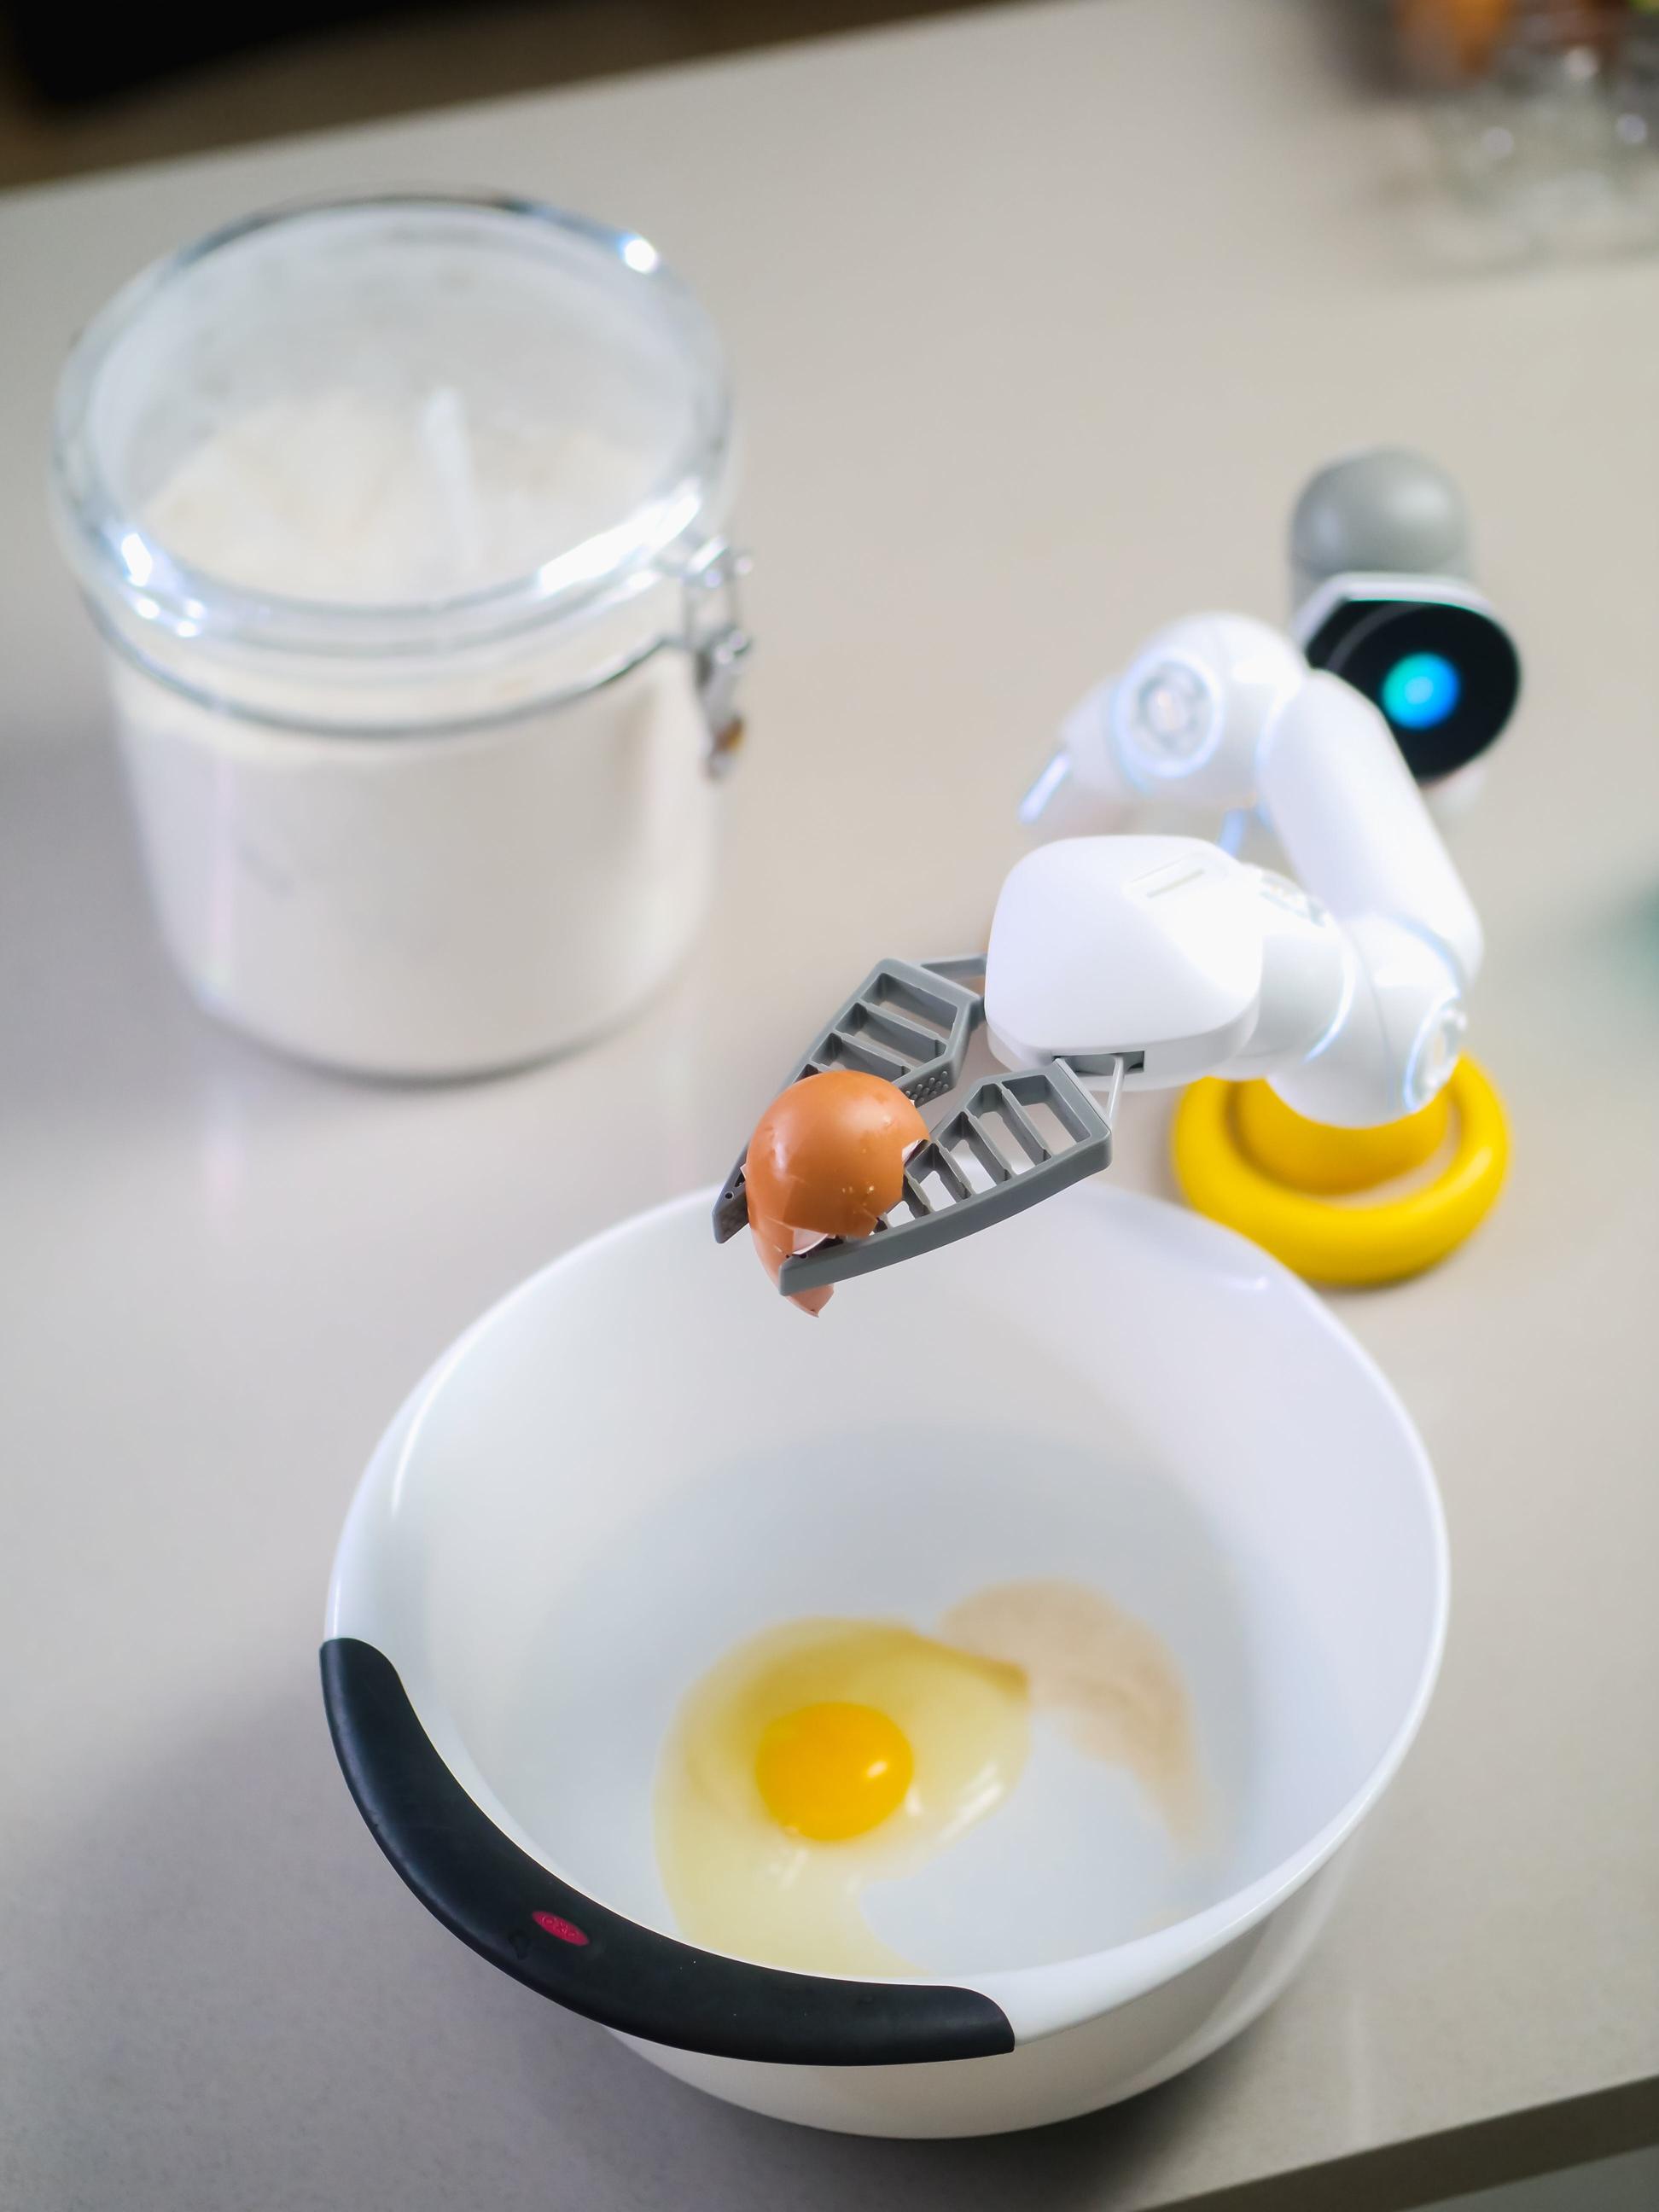 Roboty kuchenne – jak technologia zmienia nasze podejście do gotowania